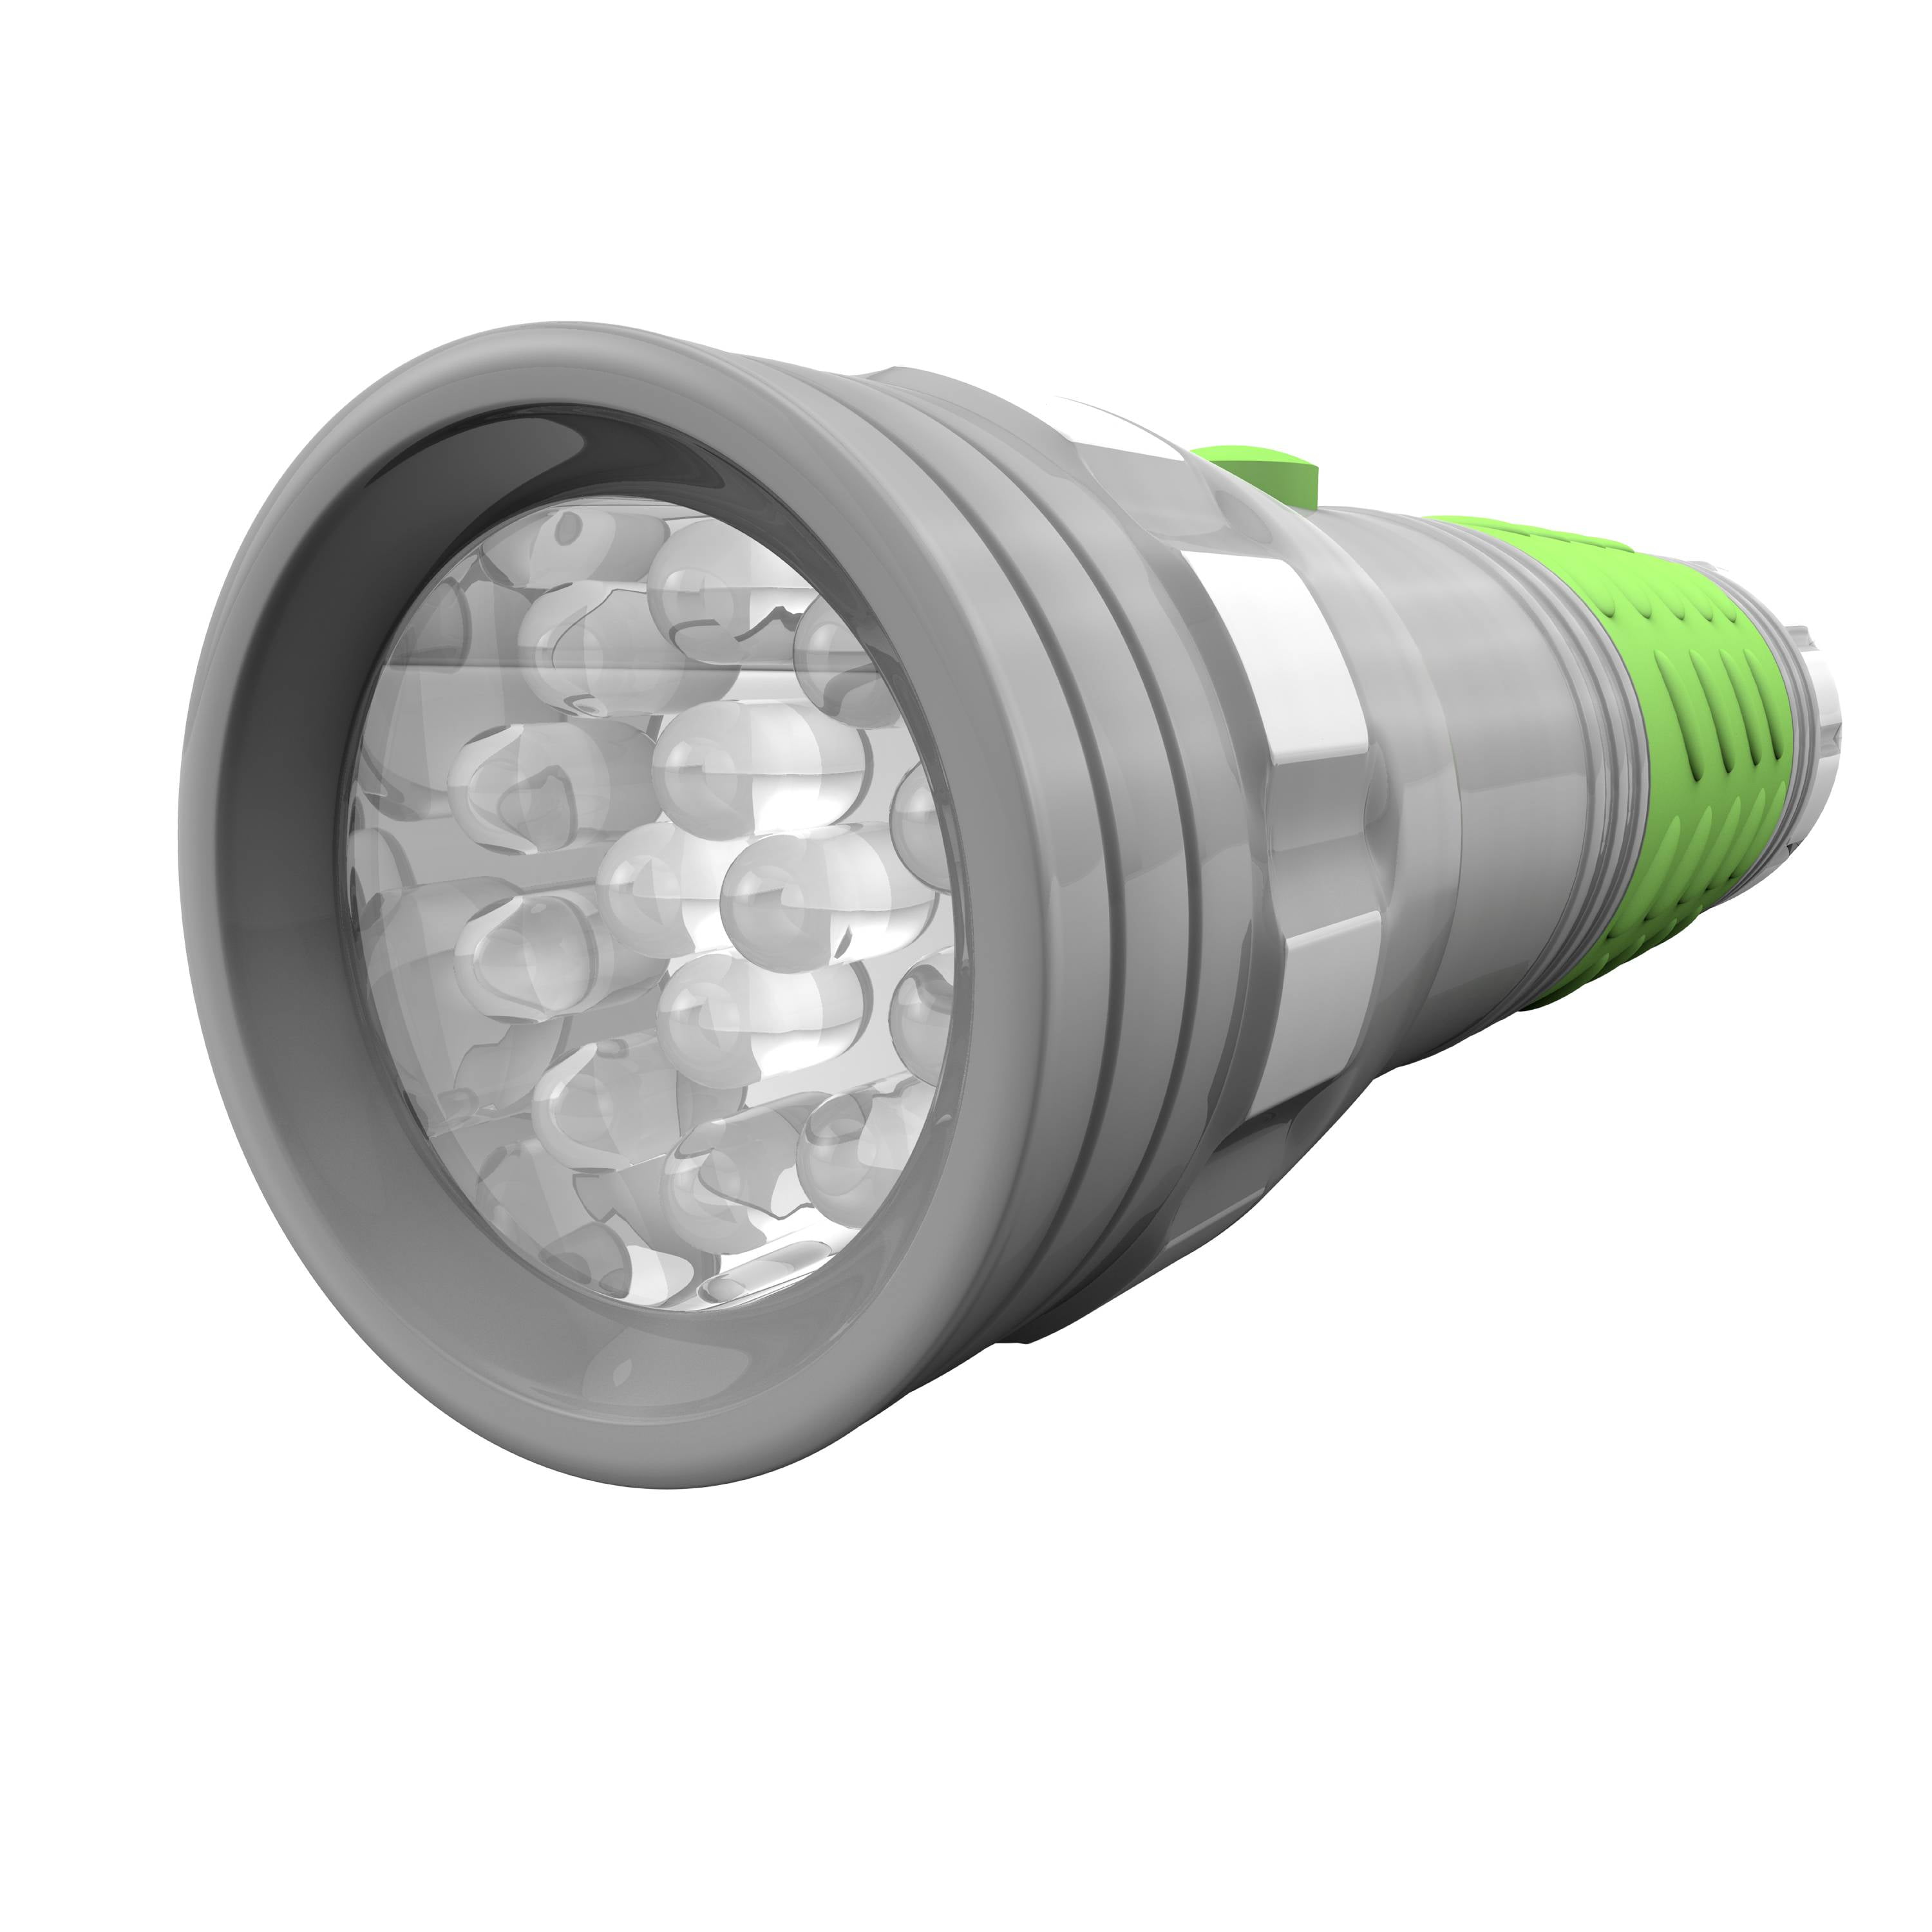 Rayovac® Industrial LED Flashlight: 3 AAA Batteries